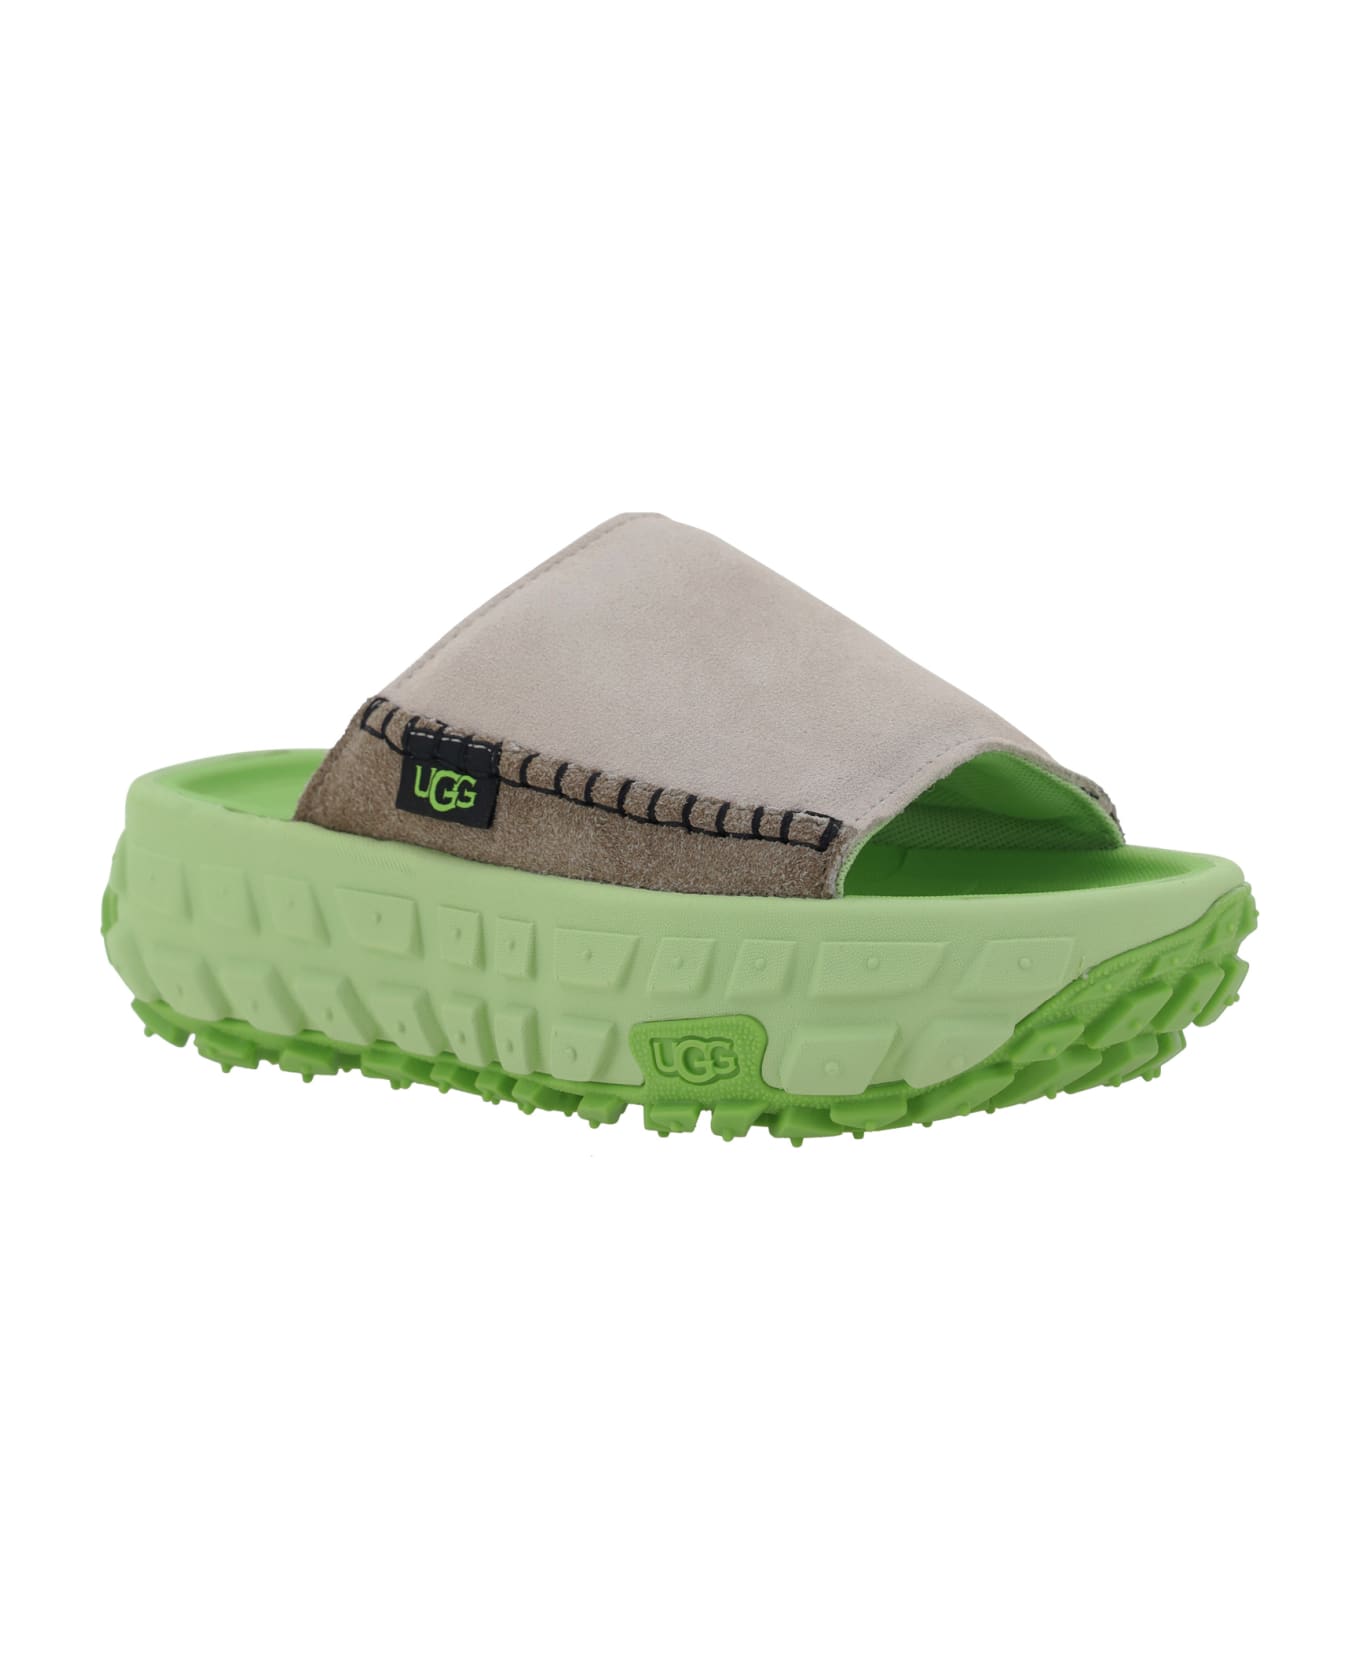 UGG Venture Daze Sandals - Natural サンダル